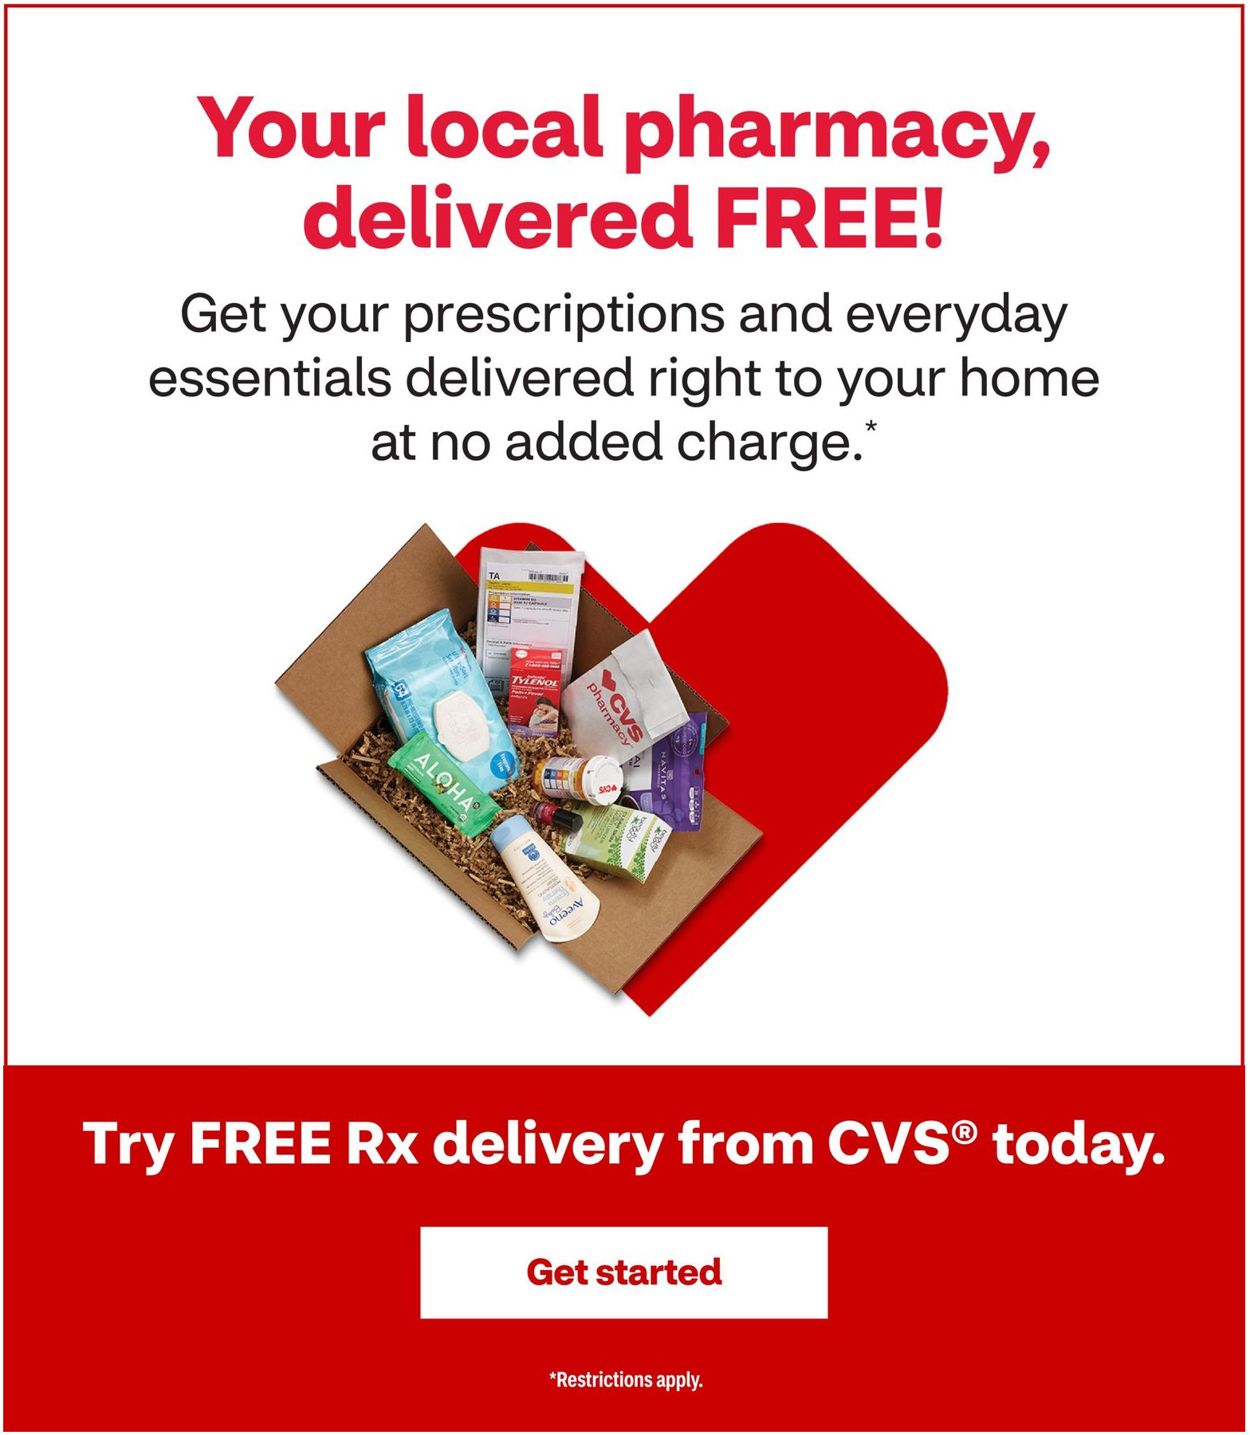 CVS Pharmacy Ad from 11/15/2020